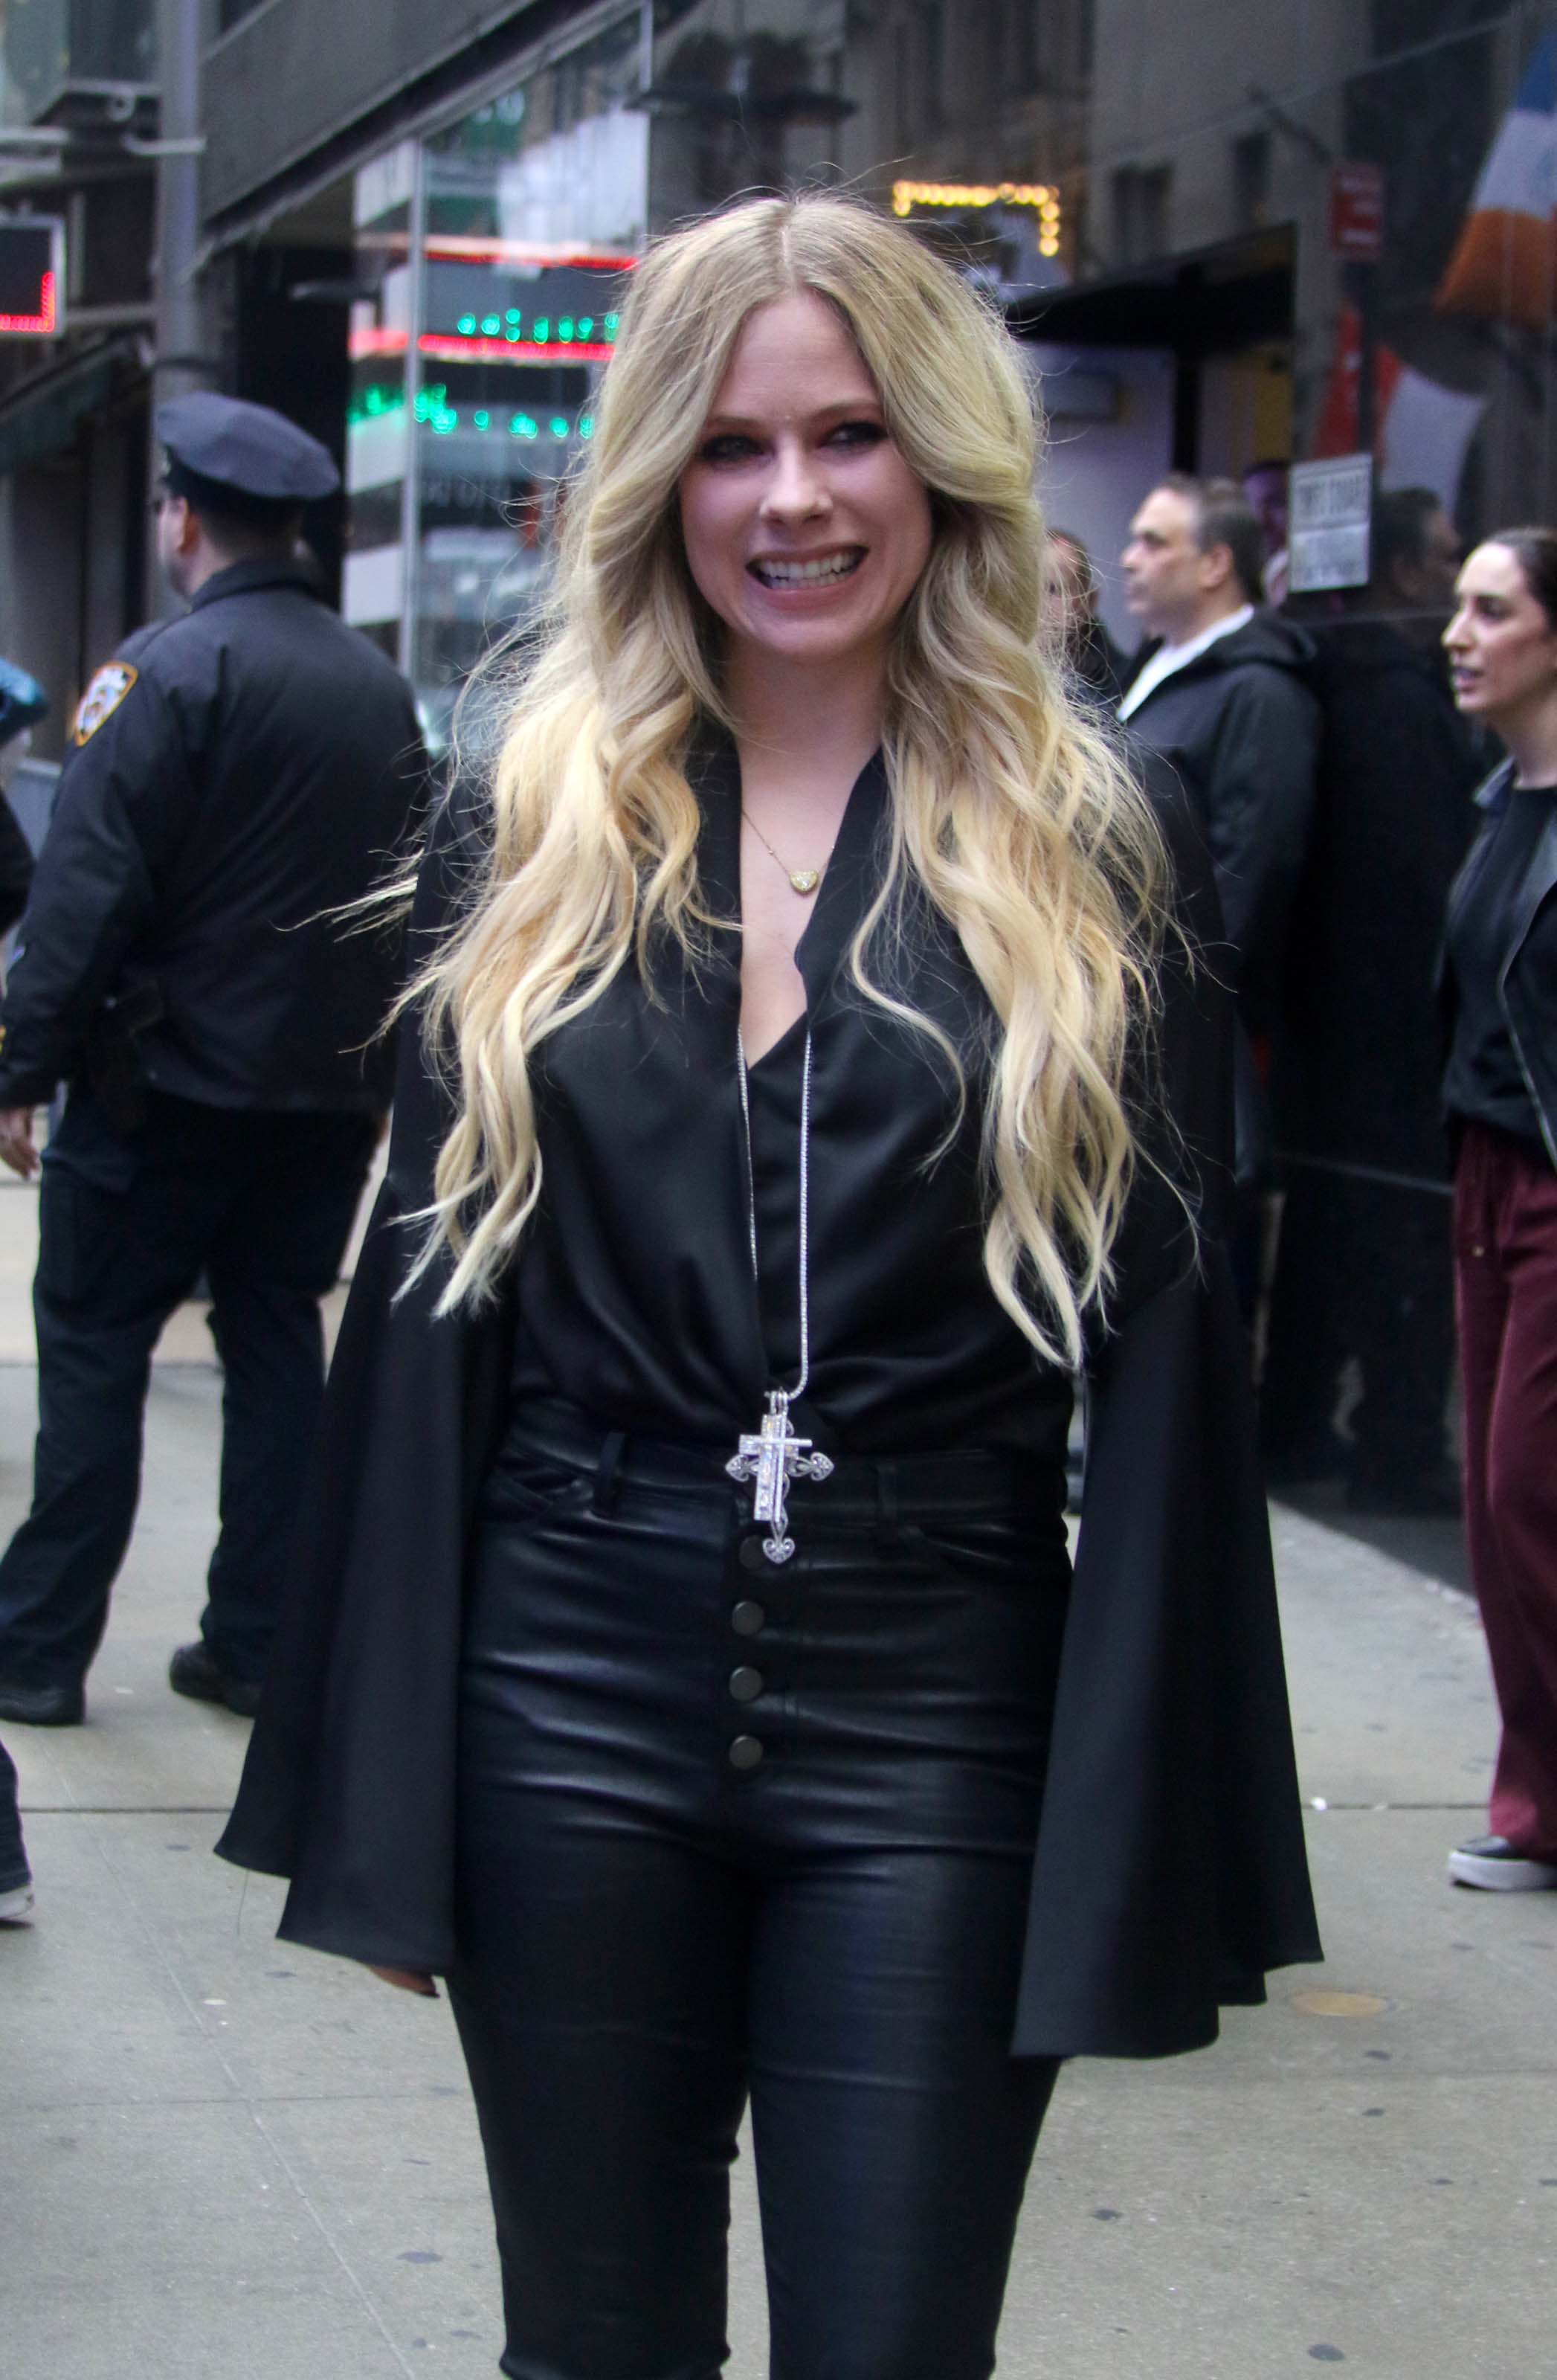 Avril Lavigne outside ‘Good Morning America’